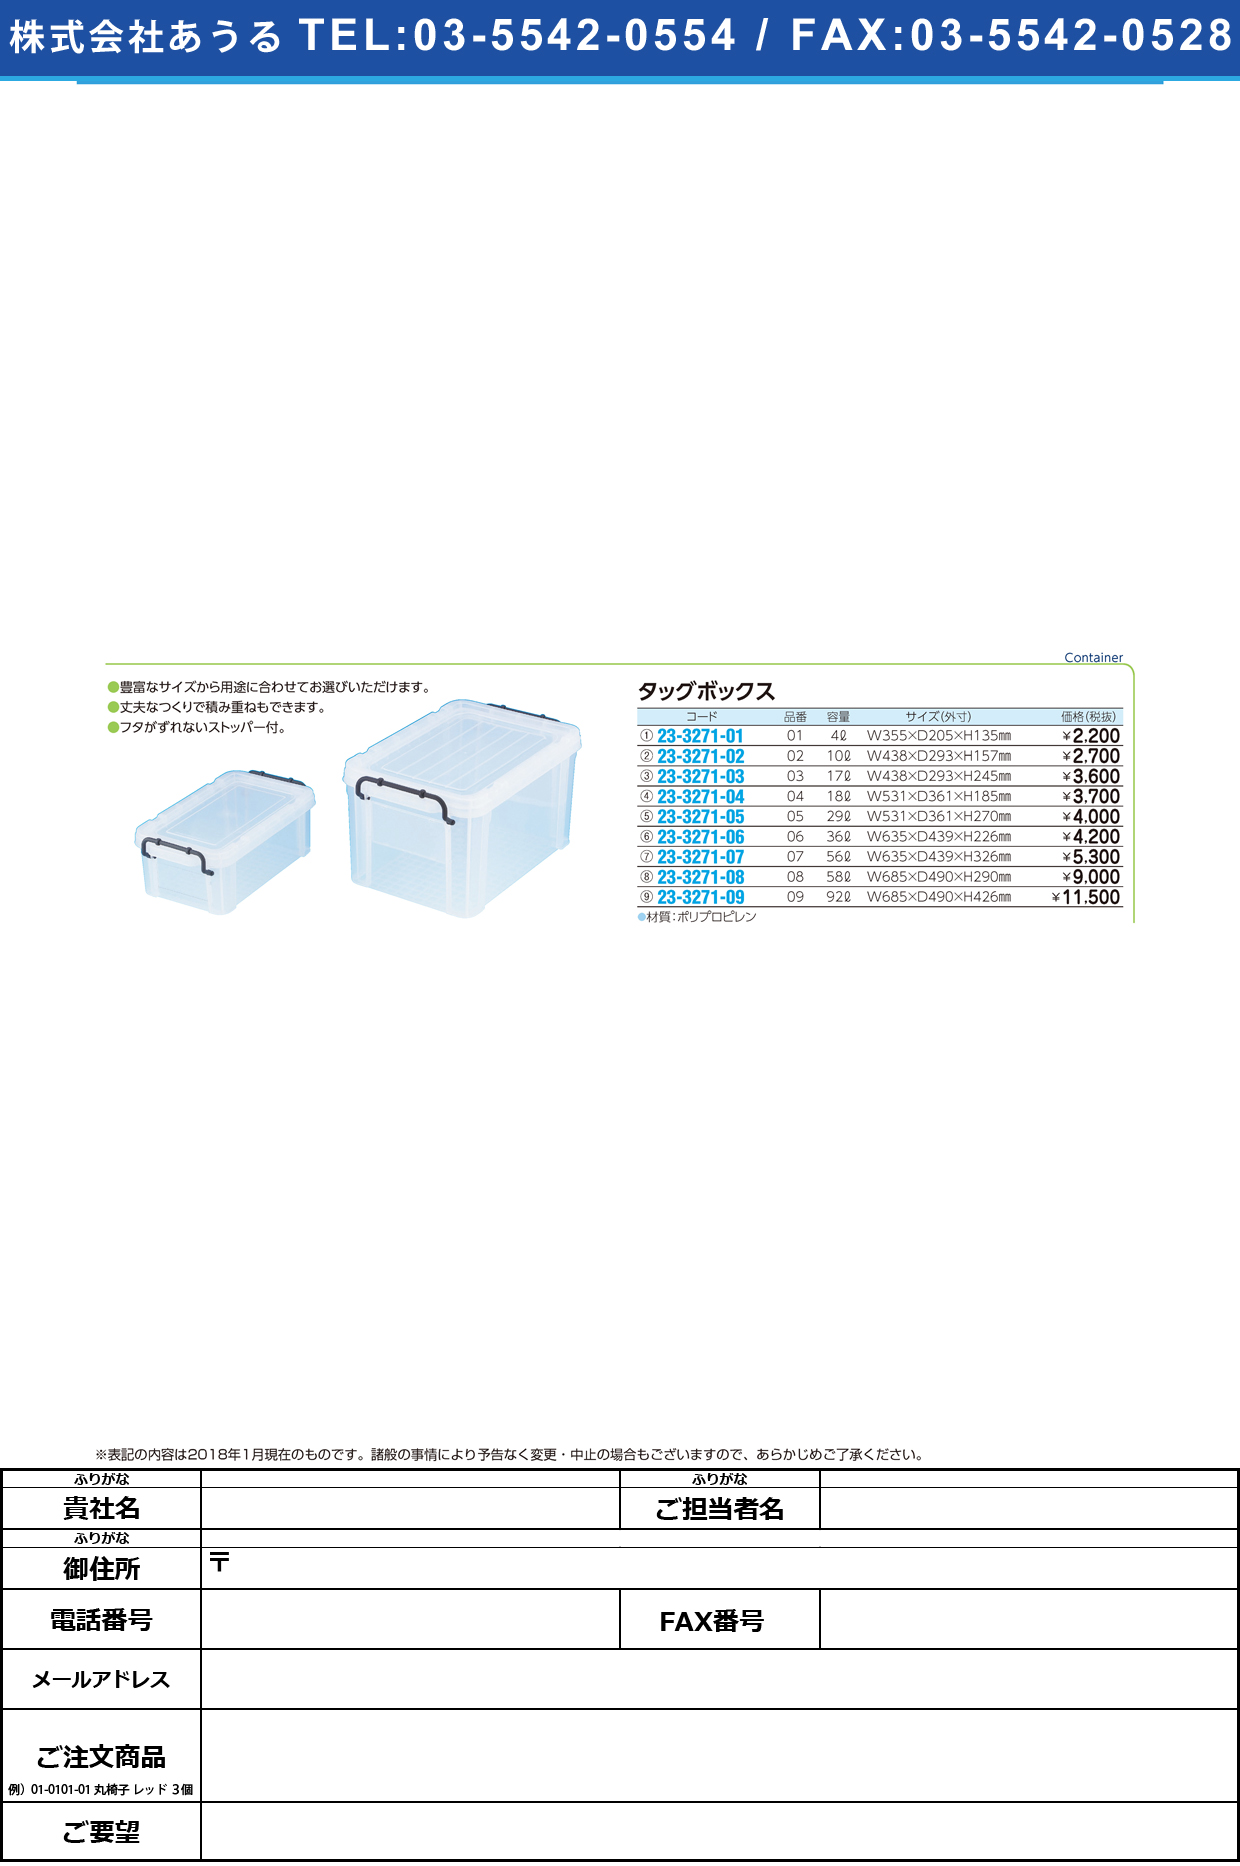 (23-3271-09)タッグボックス 09(92L) ﾀｯｸﾞﾎﾞｯｸｽ【1個単位】【2019年カタログ商品】